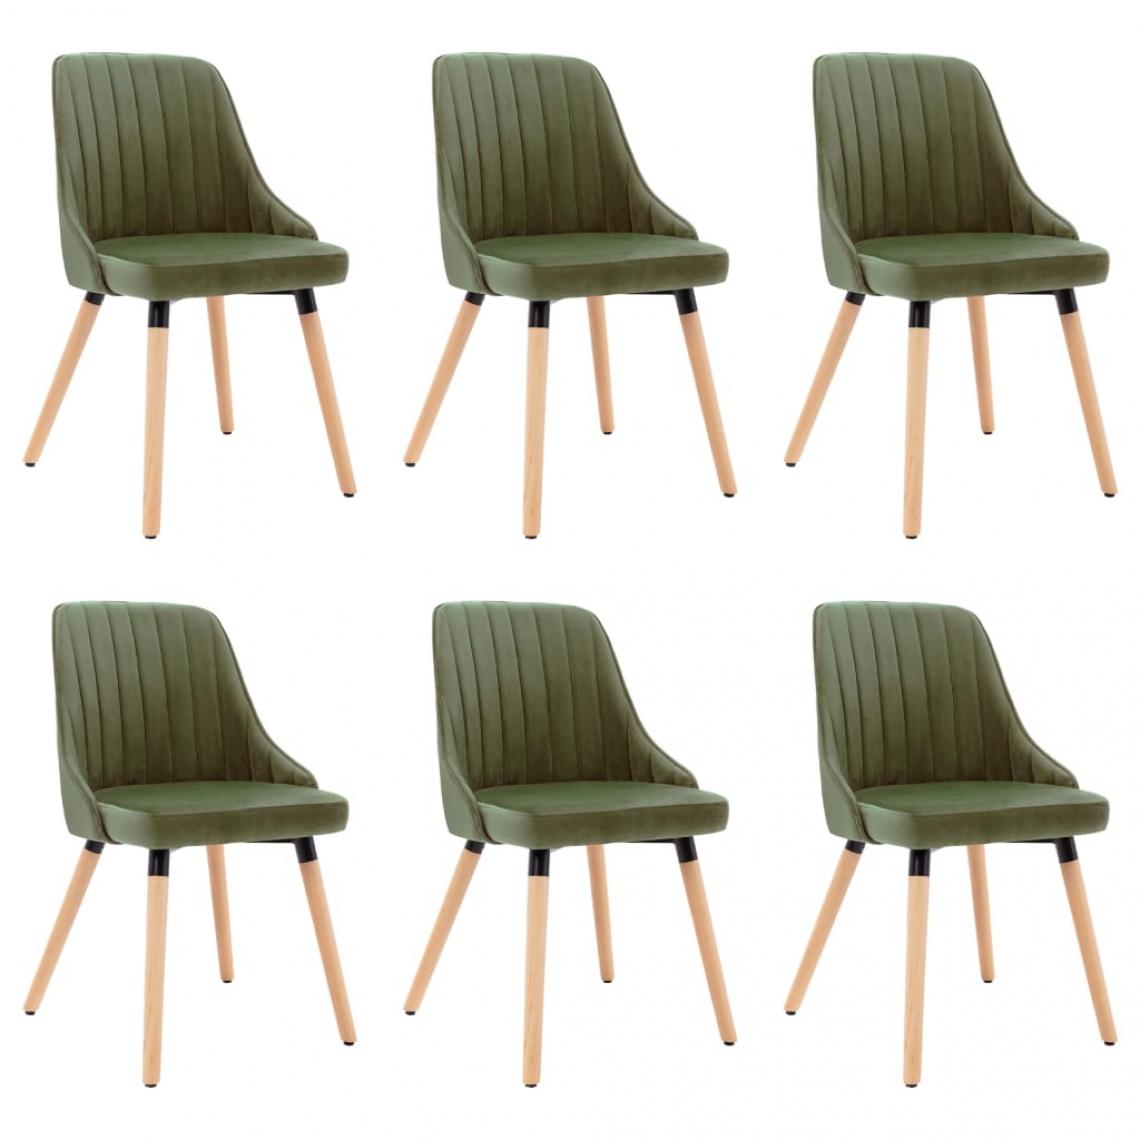 Decoshop26 - Lot de 6 chaises de salle à manger cuisine design moderne velours vert clair CDS022883 - Chaises